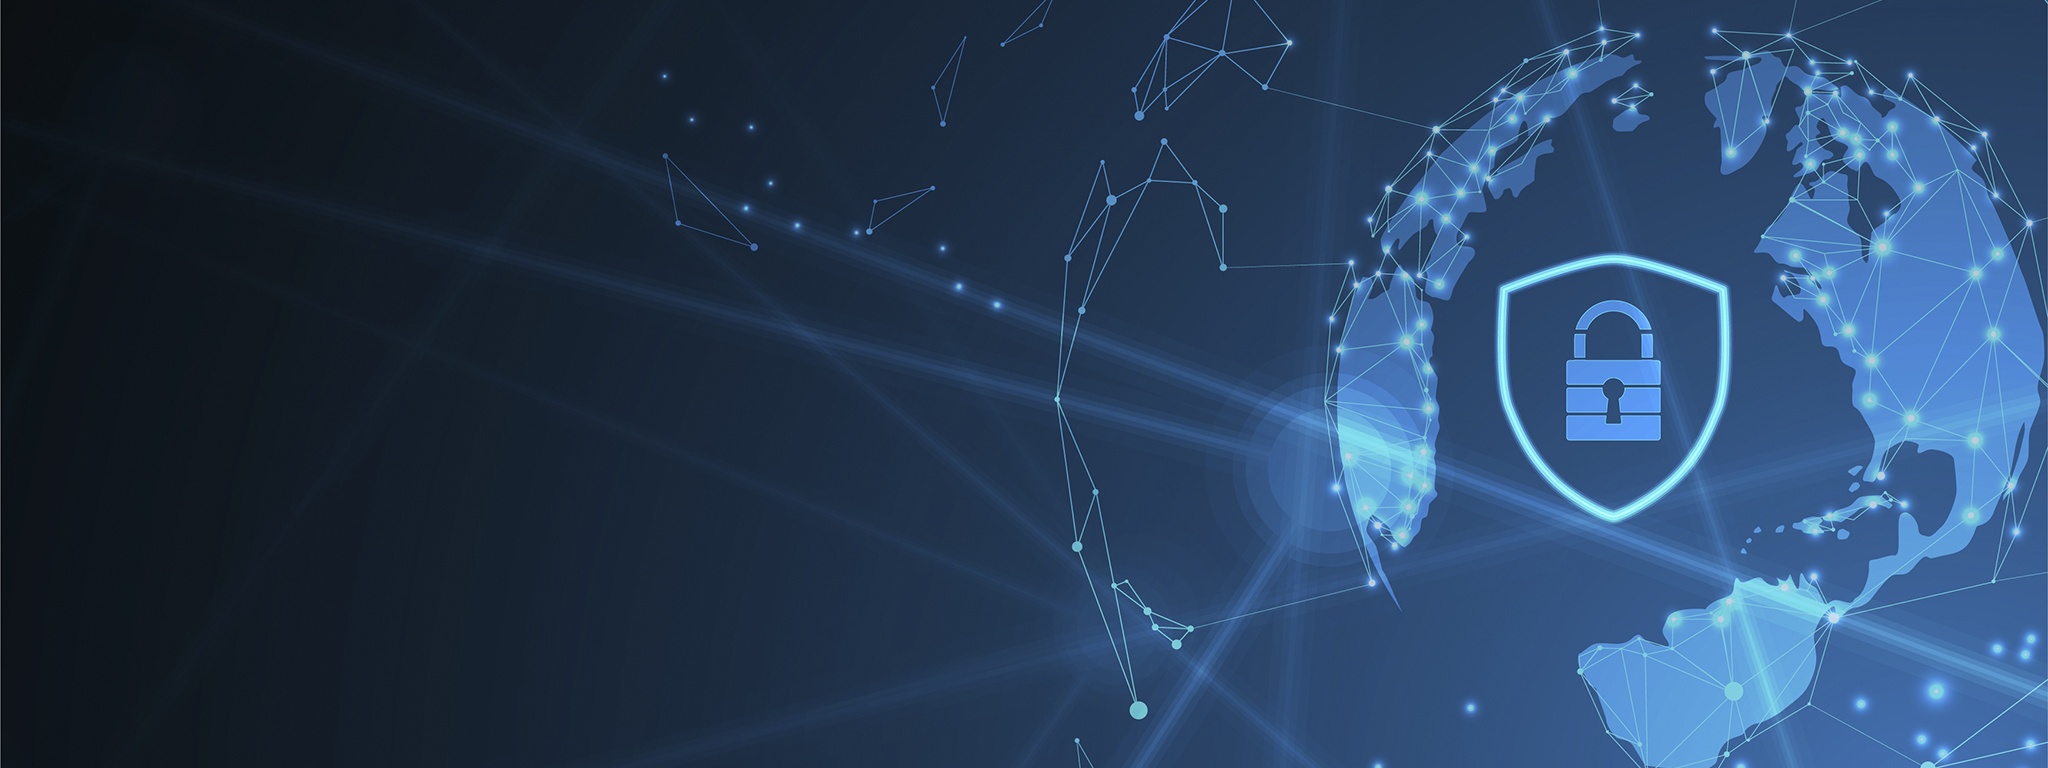 голубая иллюстрация цифровых линий Интернета на глобусе с замком и щитом